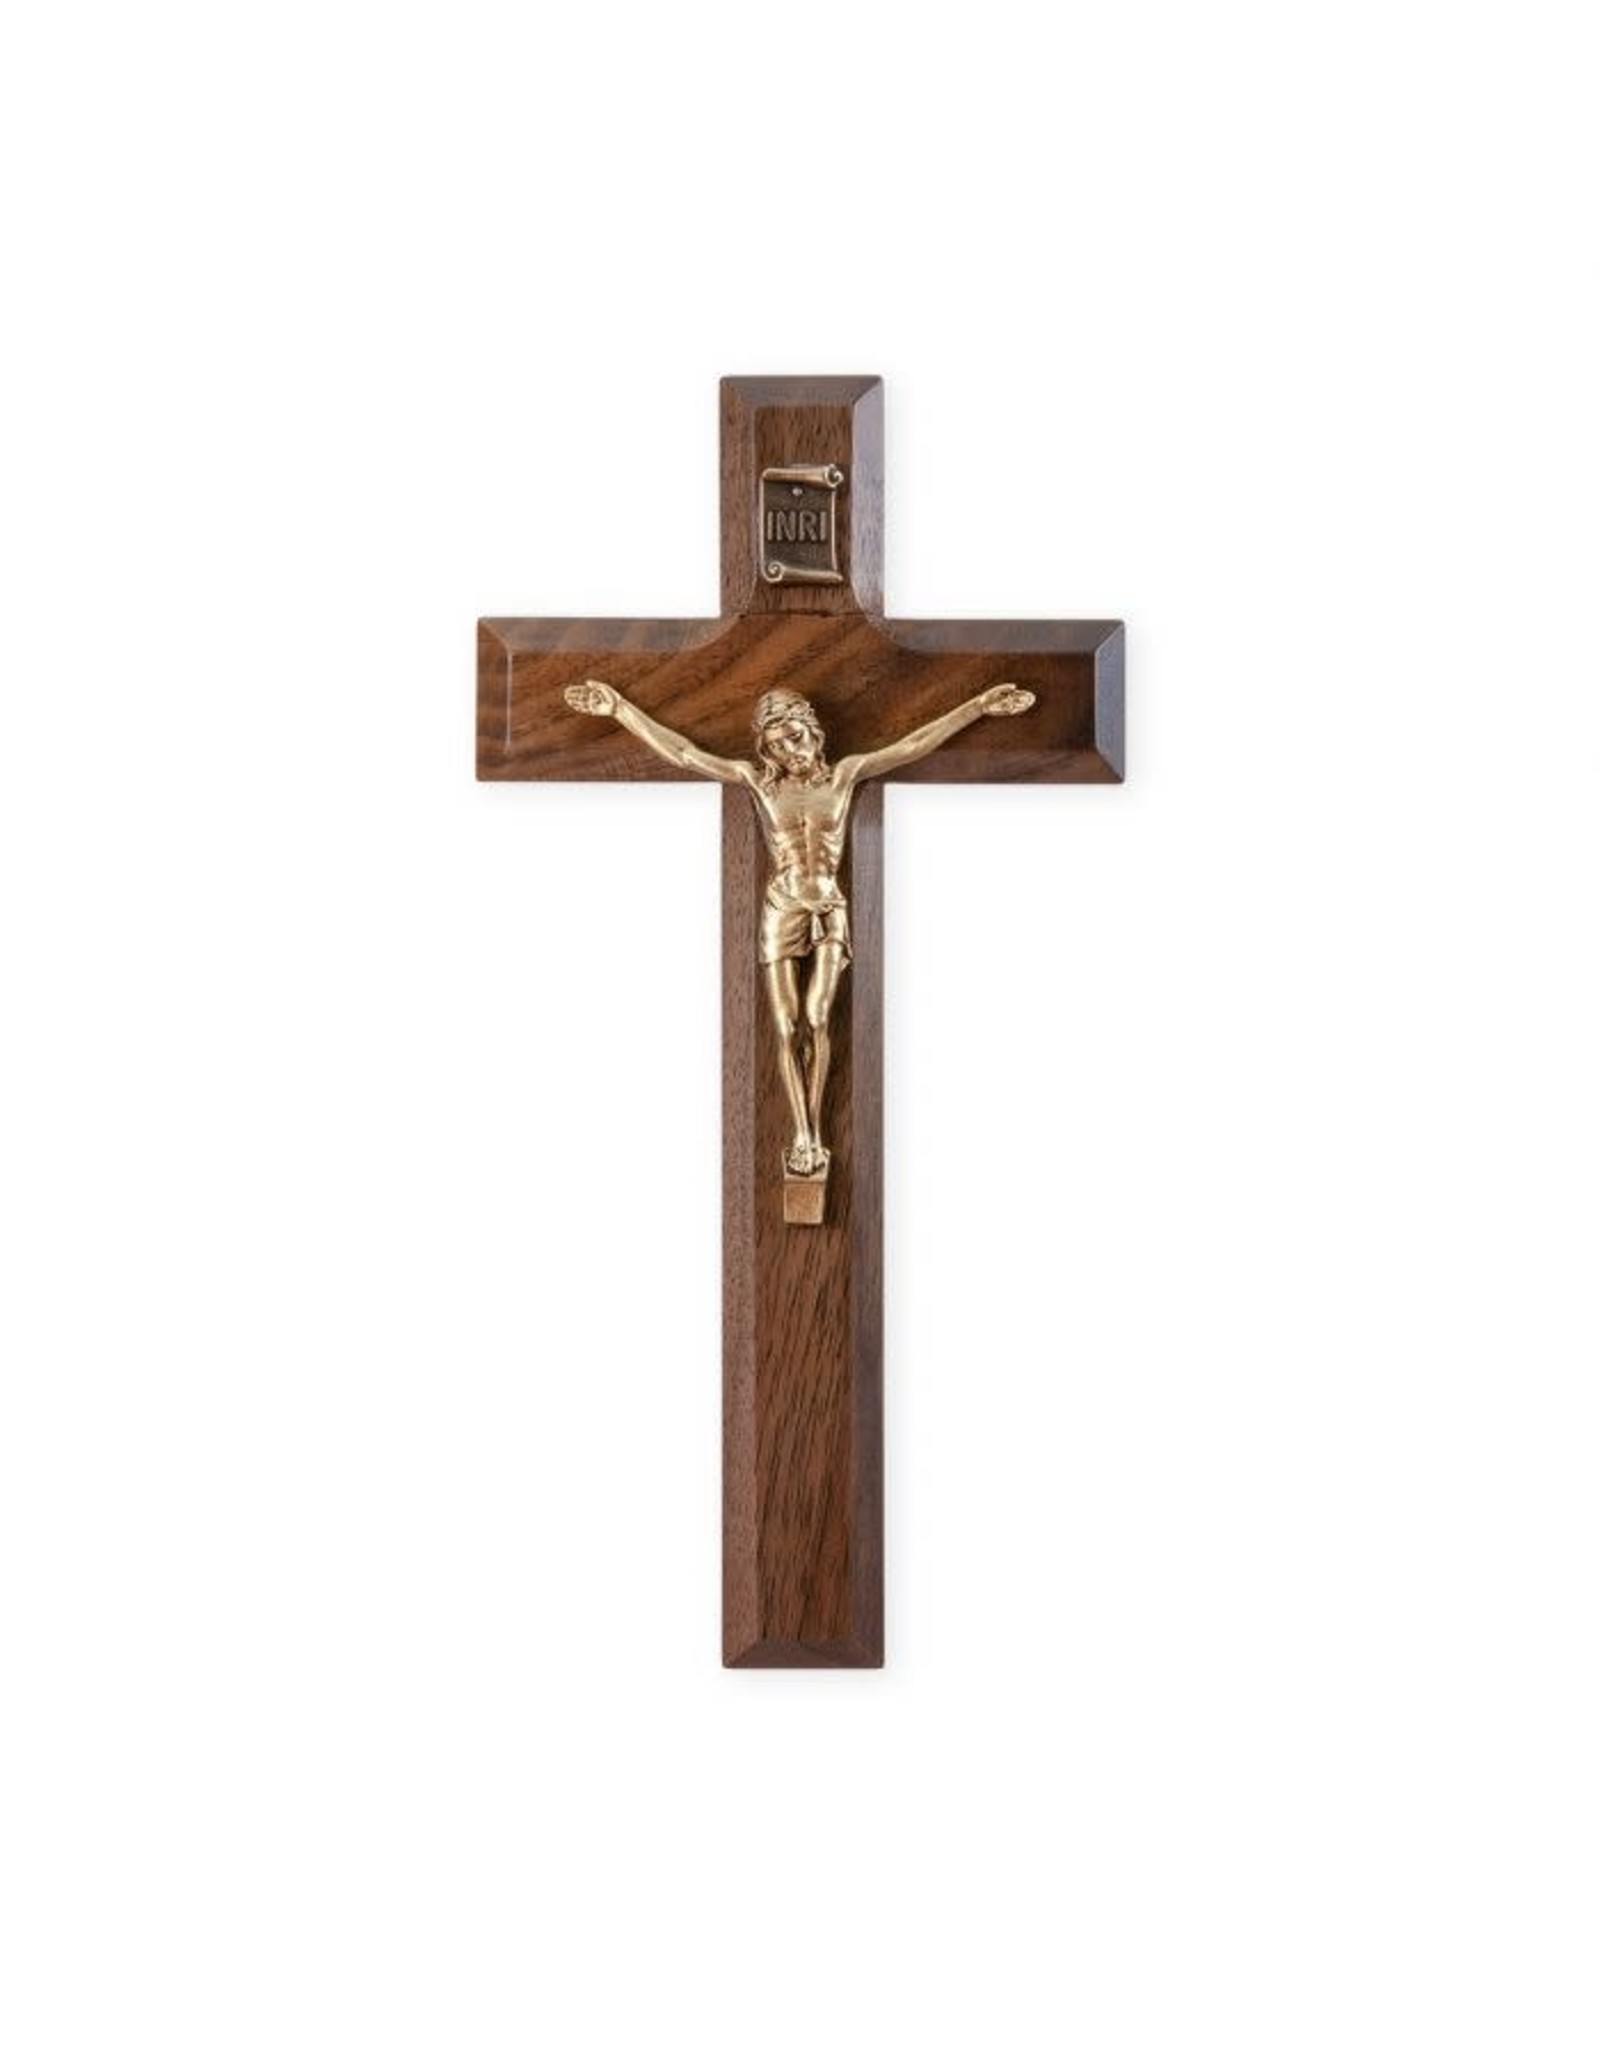 Hirten Crucifix -  Walnut Cross with Gold Corpus (7")